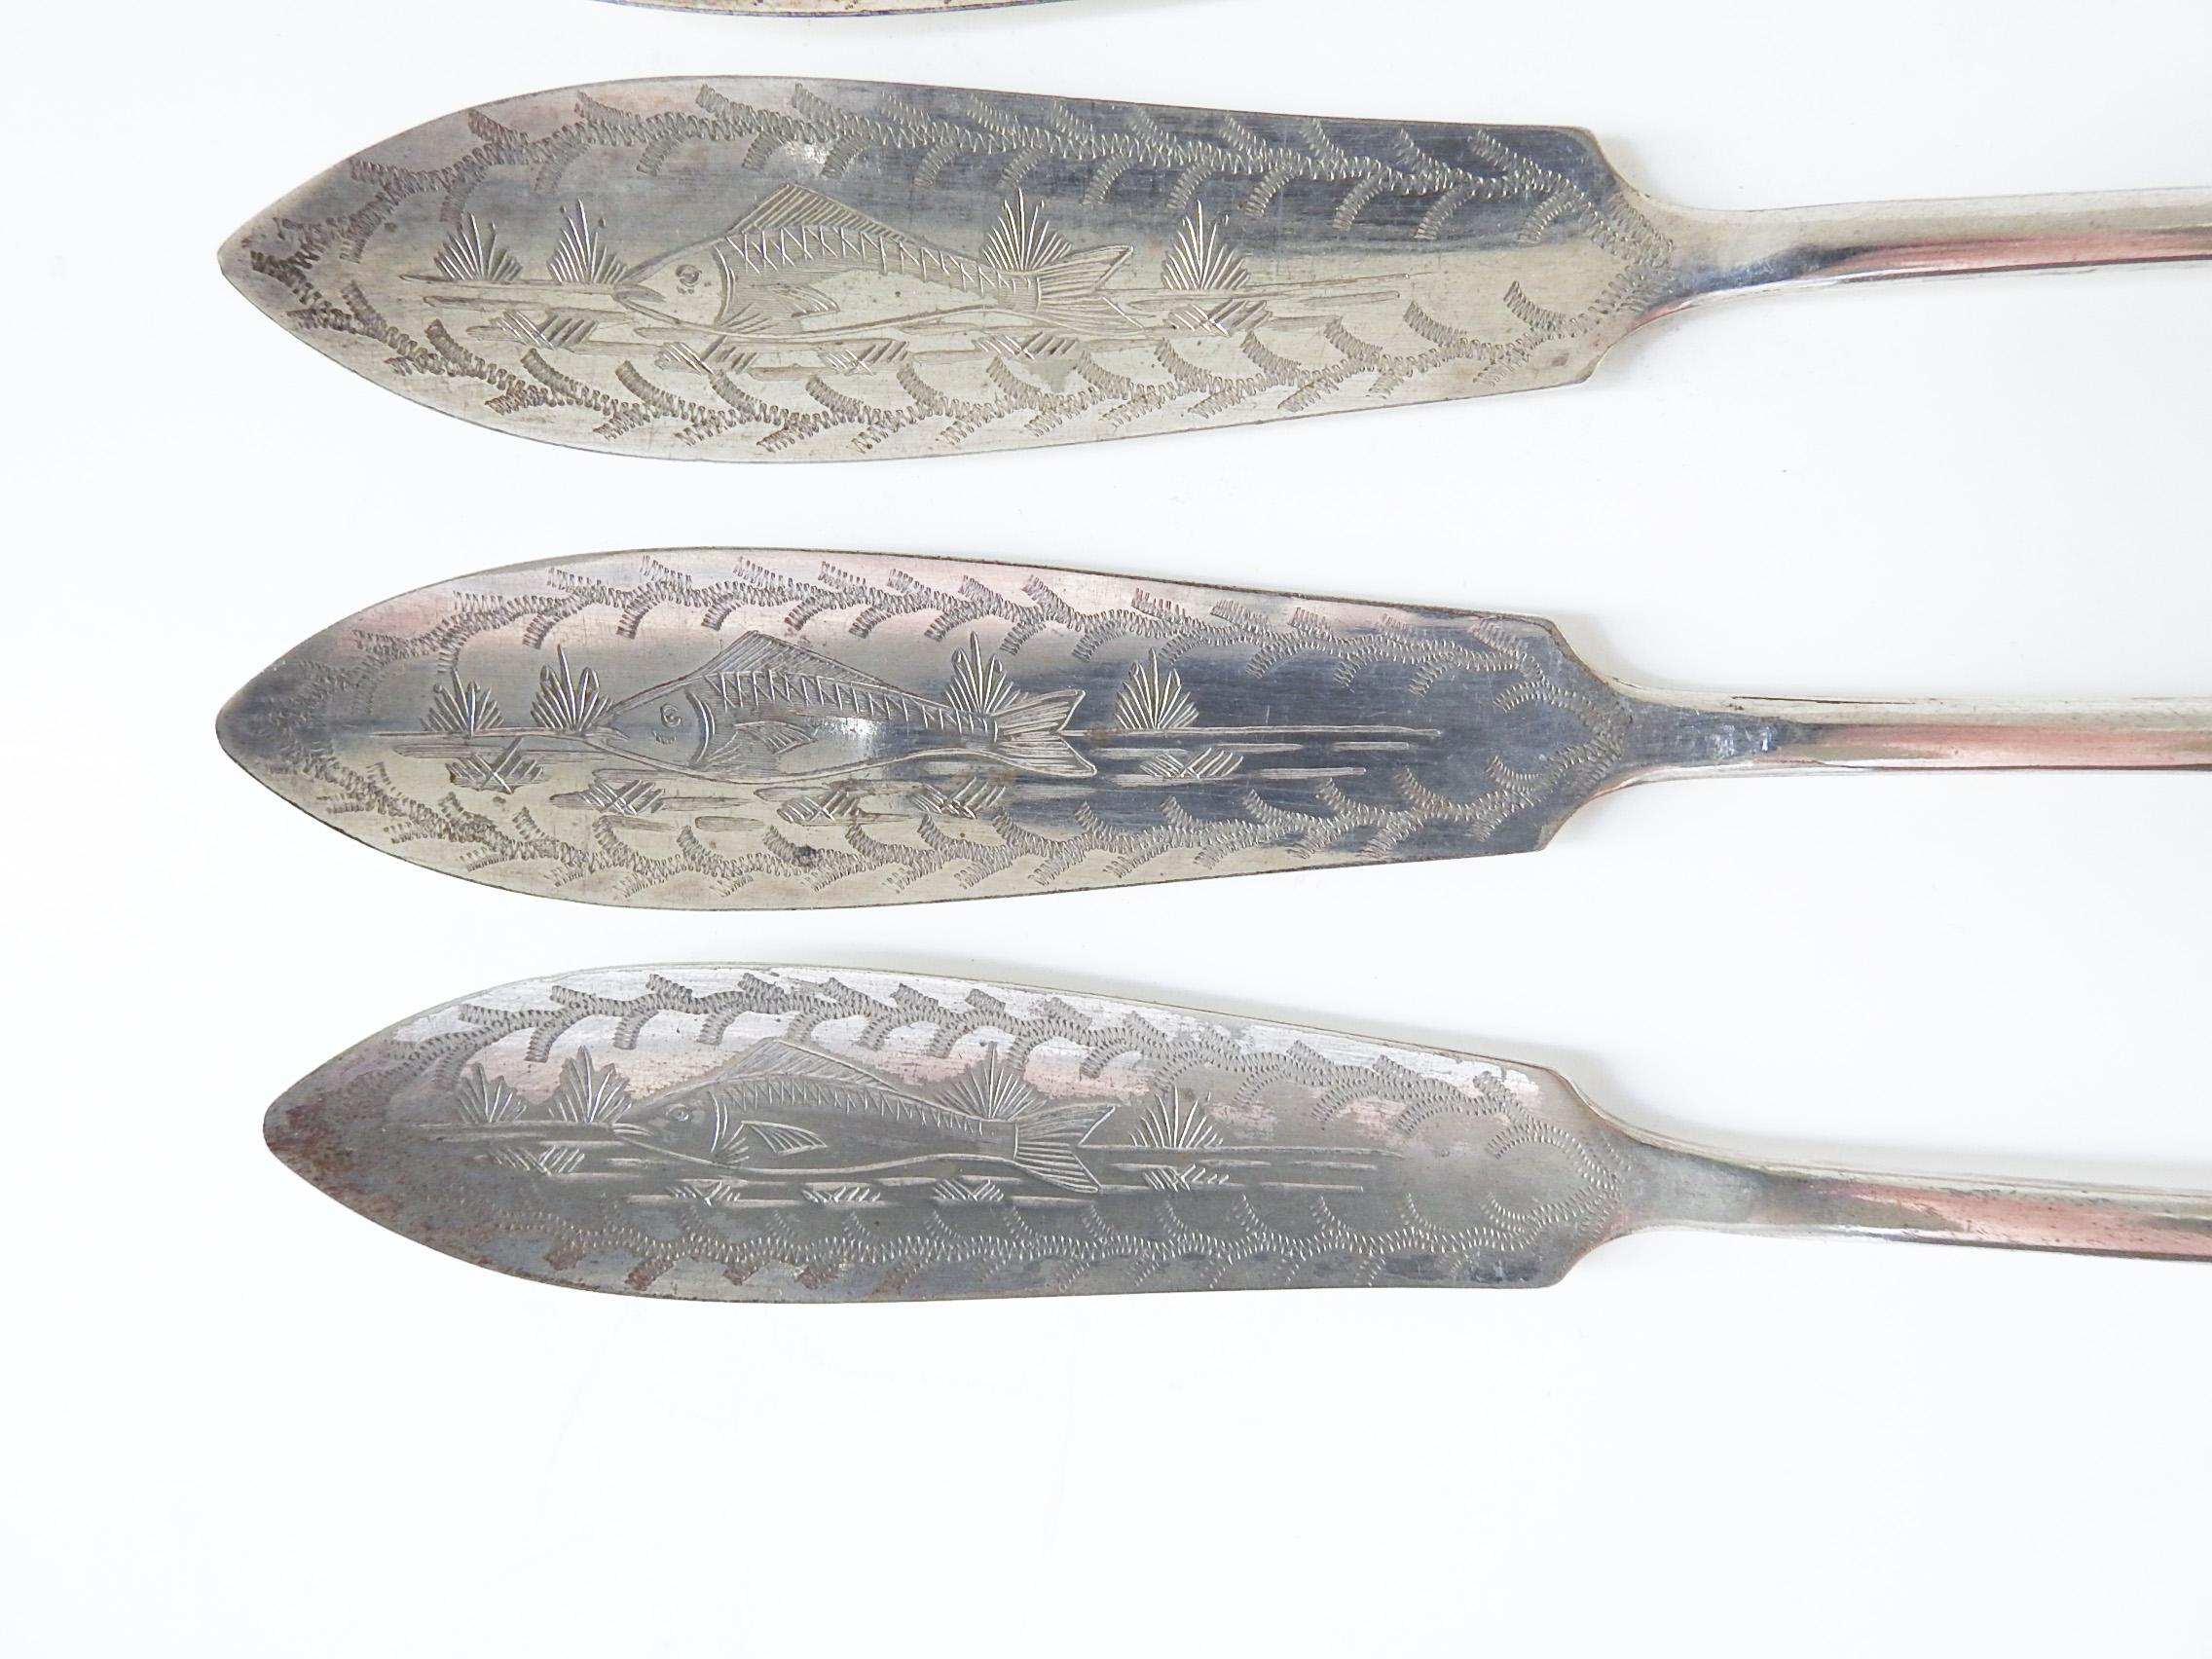 Jeu de 5 couteaux à poisson en métal argenté.  Marqué  Henry Hobson & Sons, fabriqué en Angleterre.  Chacun est gravé d'un feuillage et d'un poisson, petites éraflures.